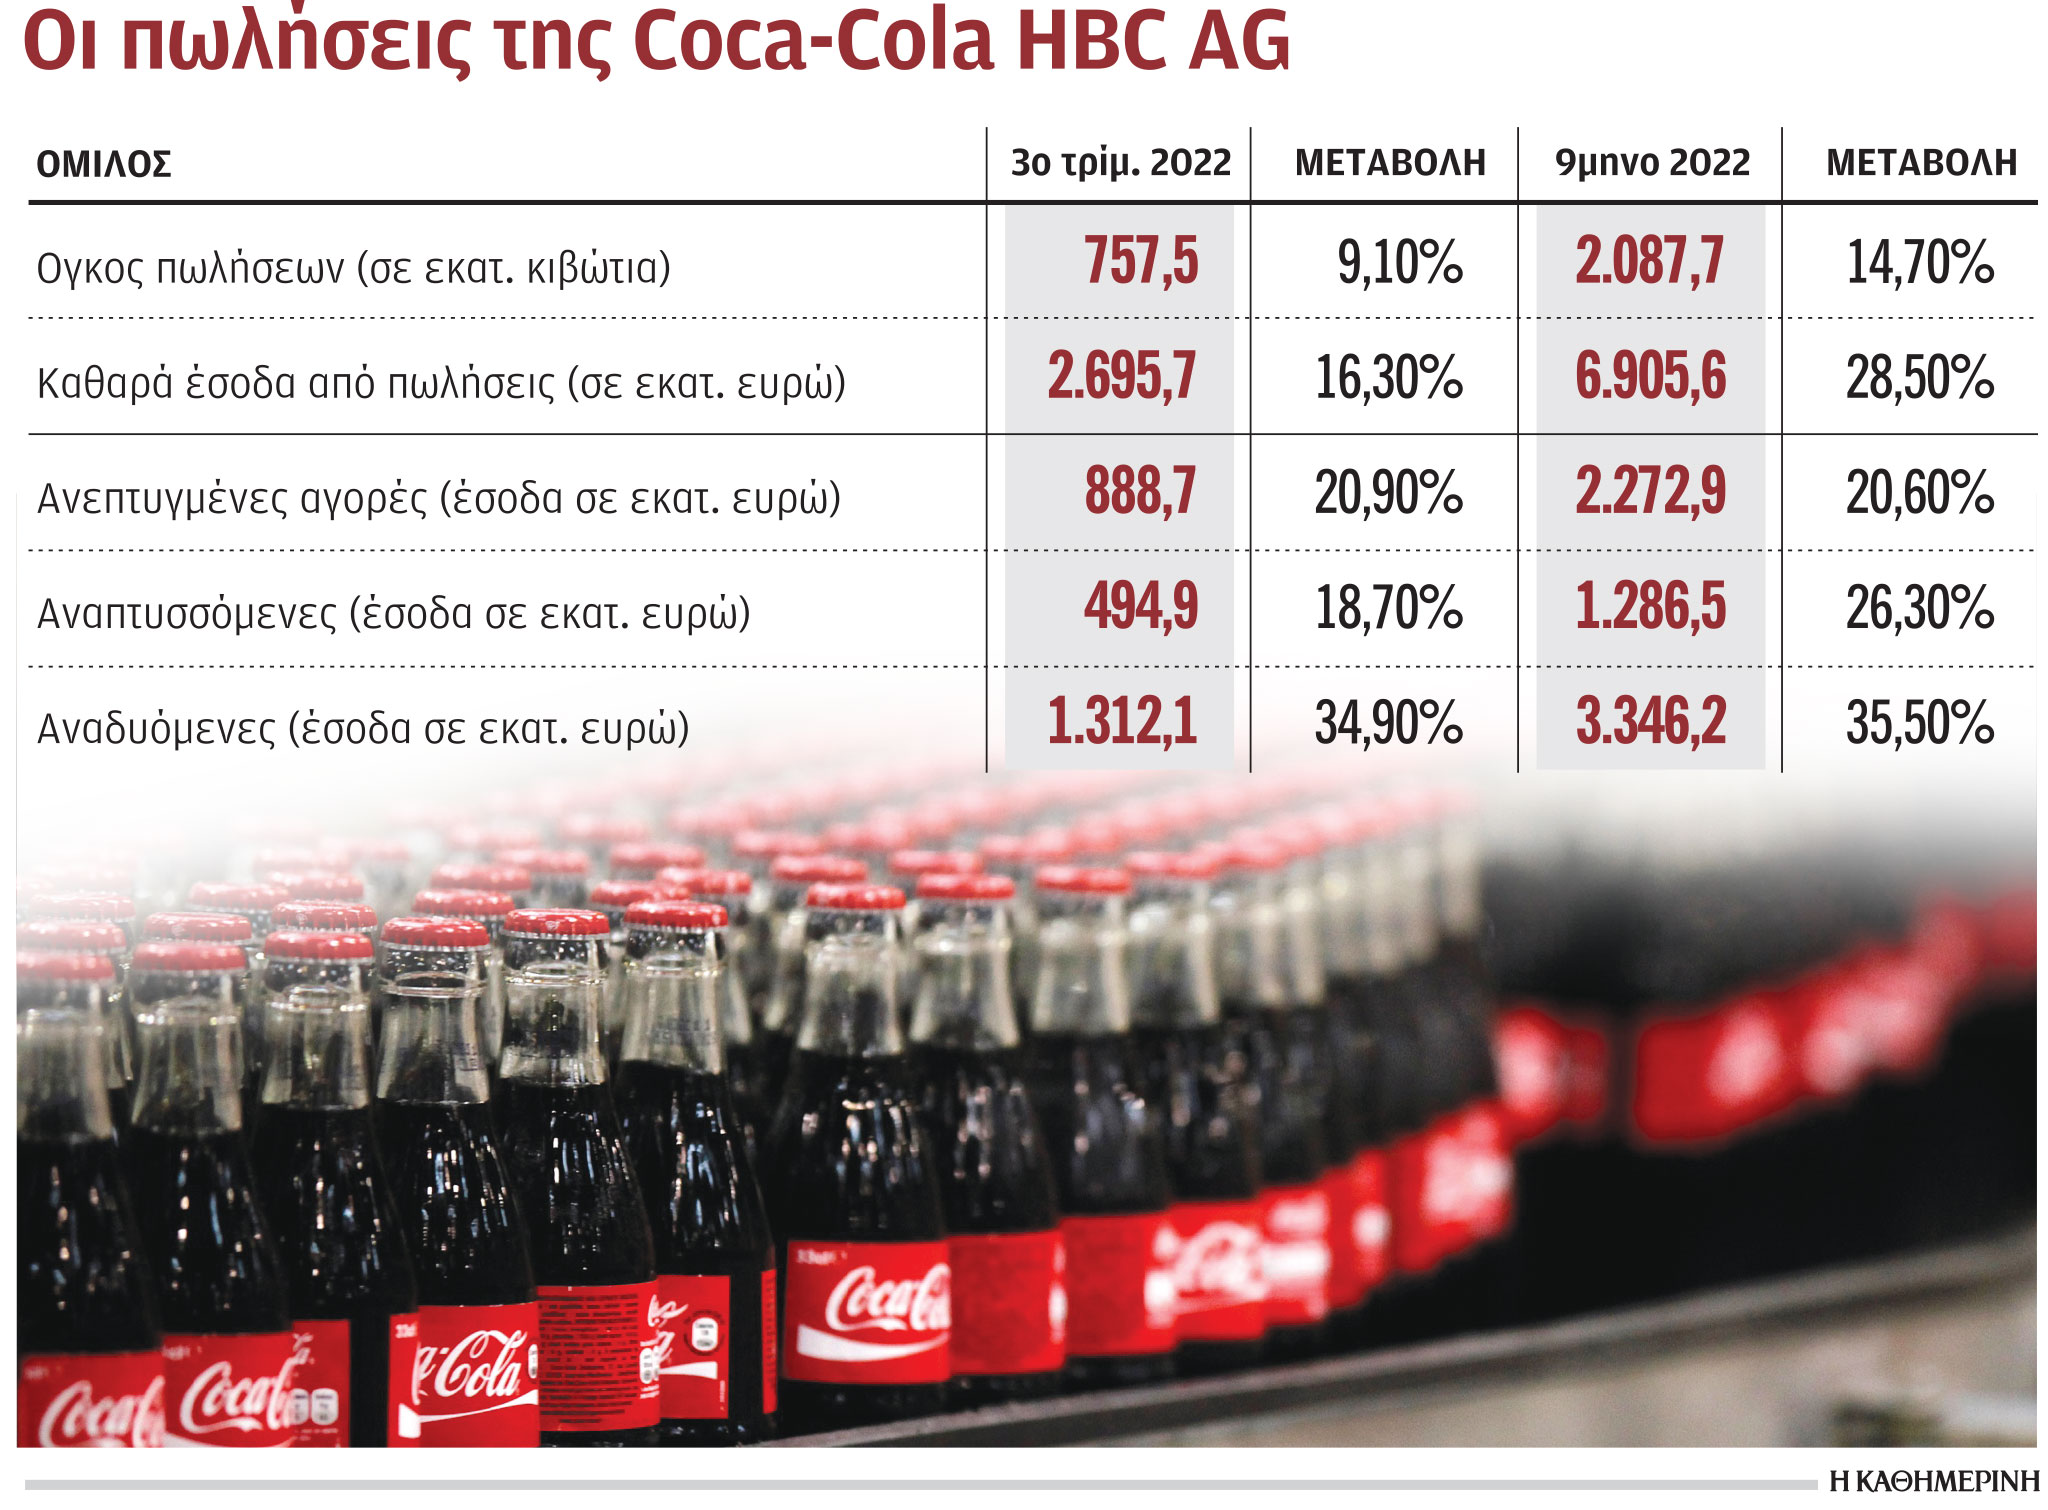 Τουρισμός και καλοκαιρία ενίσχυσαν την Coca-Cola HBC-1